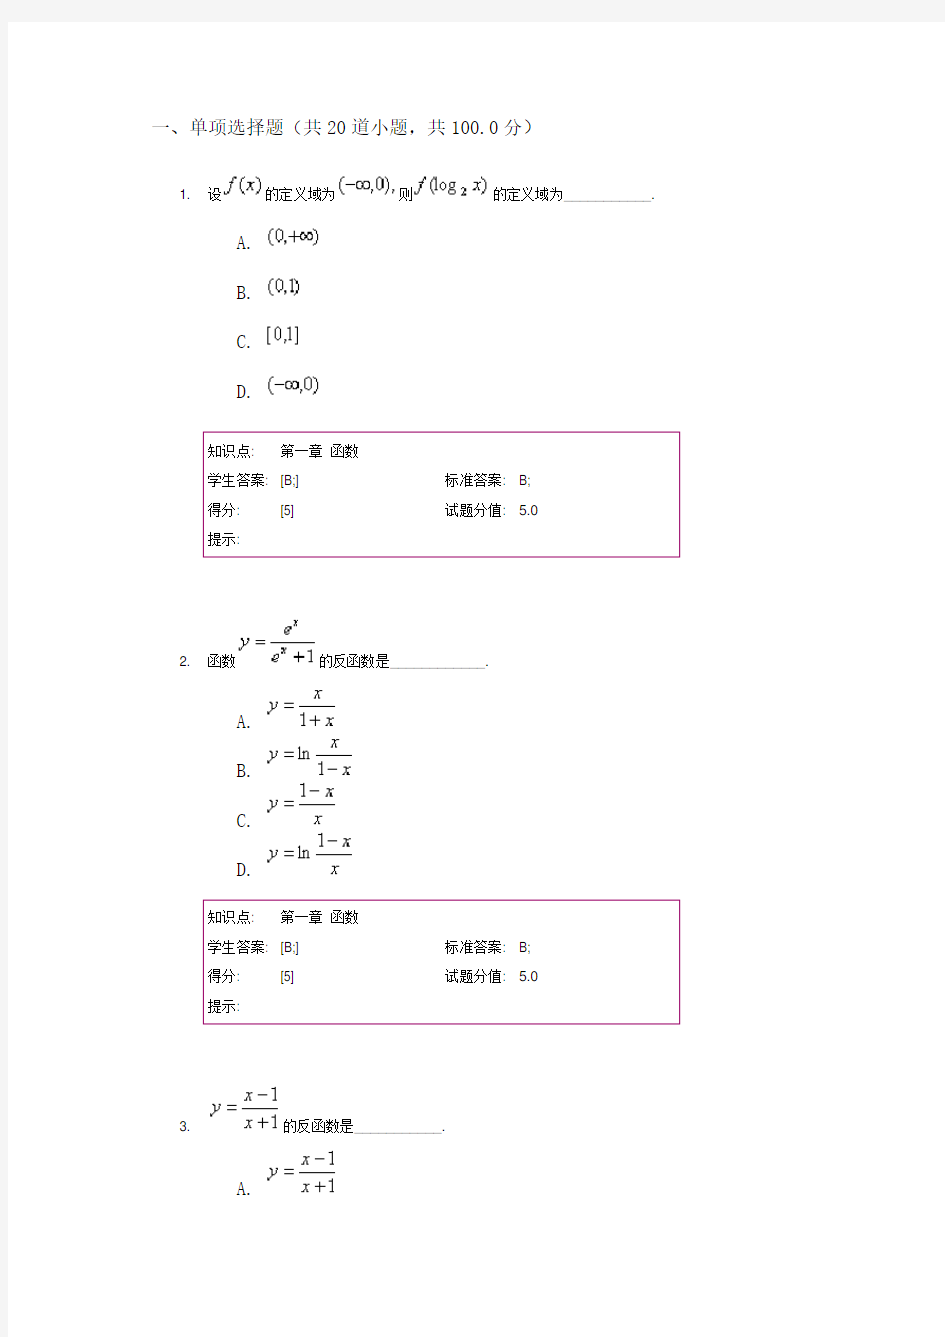 北京邮电大学网络教育学院 高等数学---阶段作业一